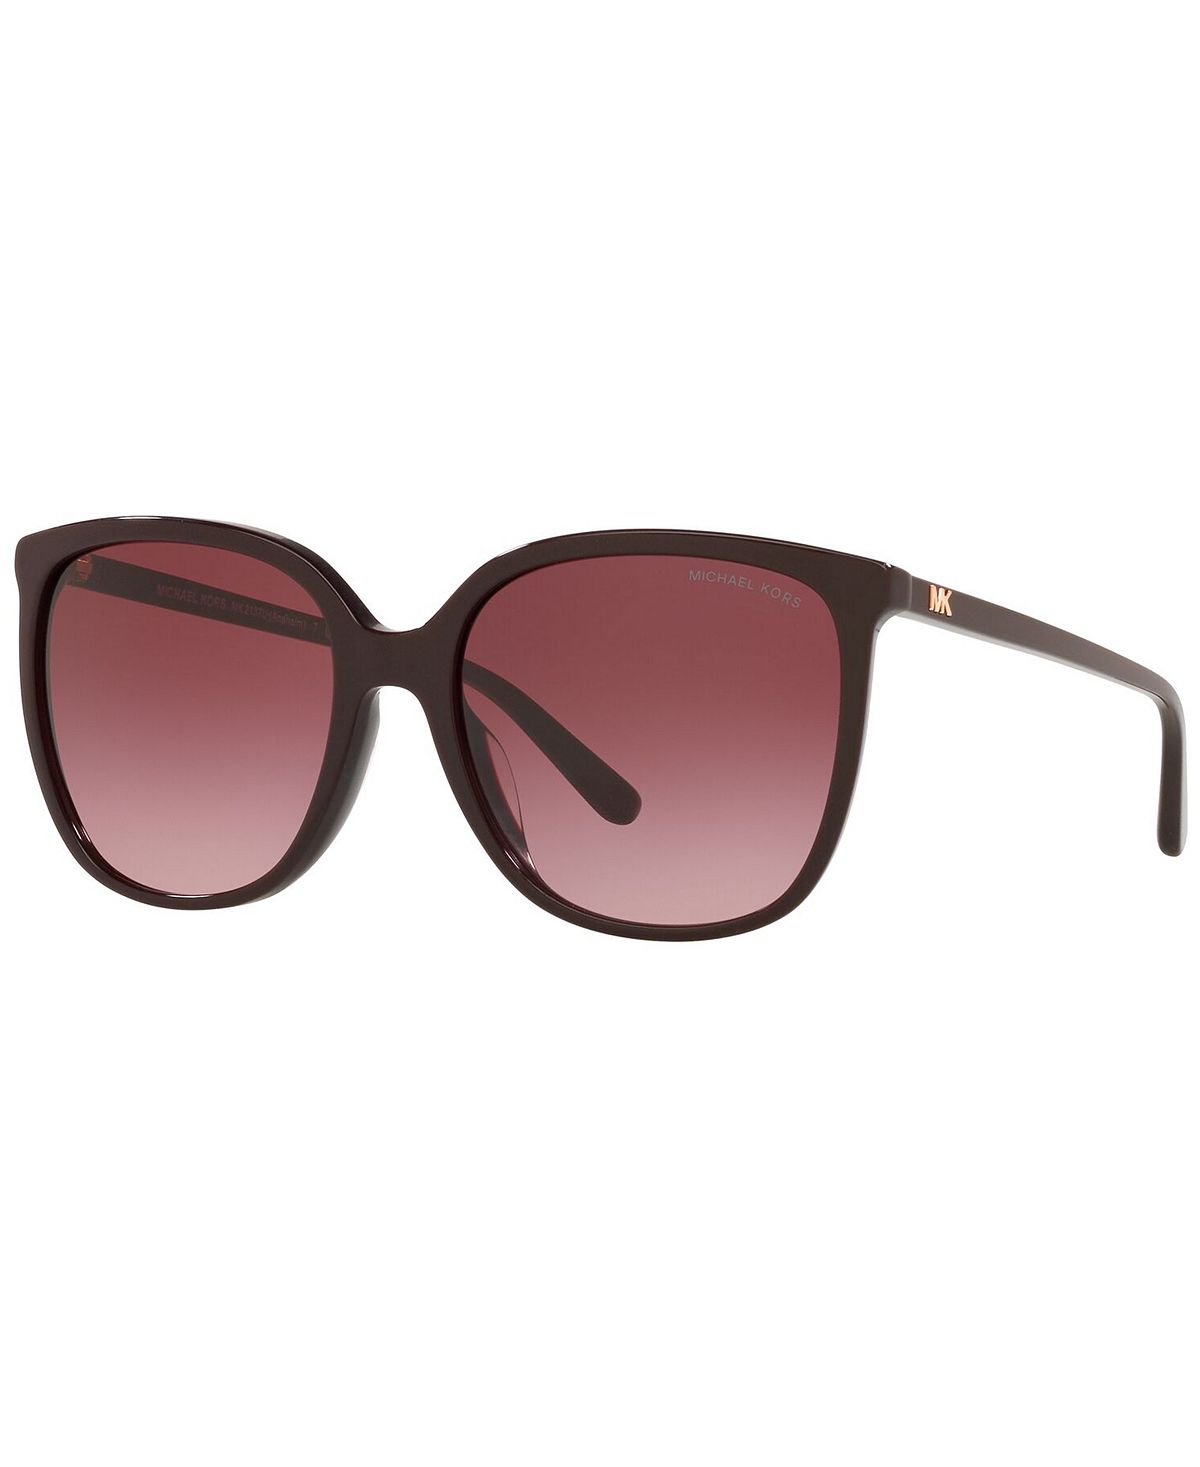 Женские солнцезащитные очки Anaheim, MK2137U 57 Michael Kors